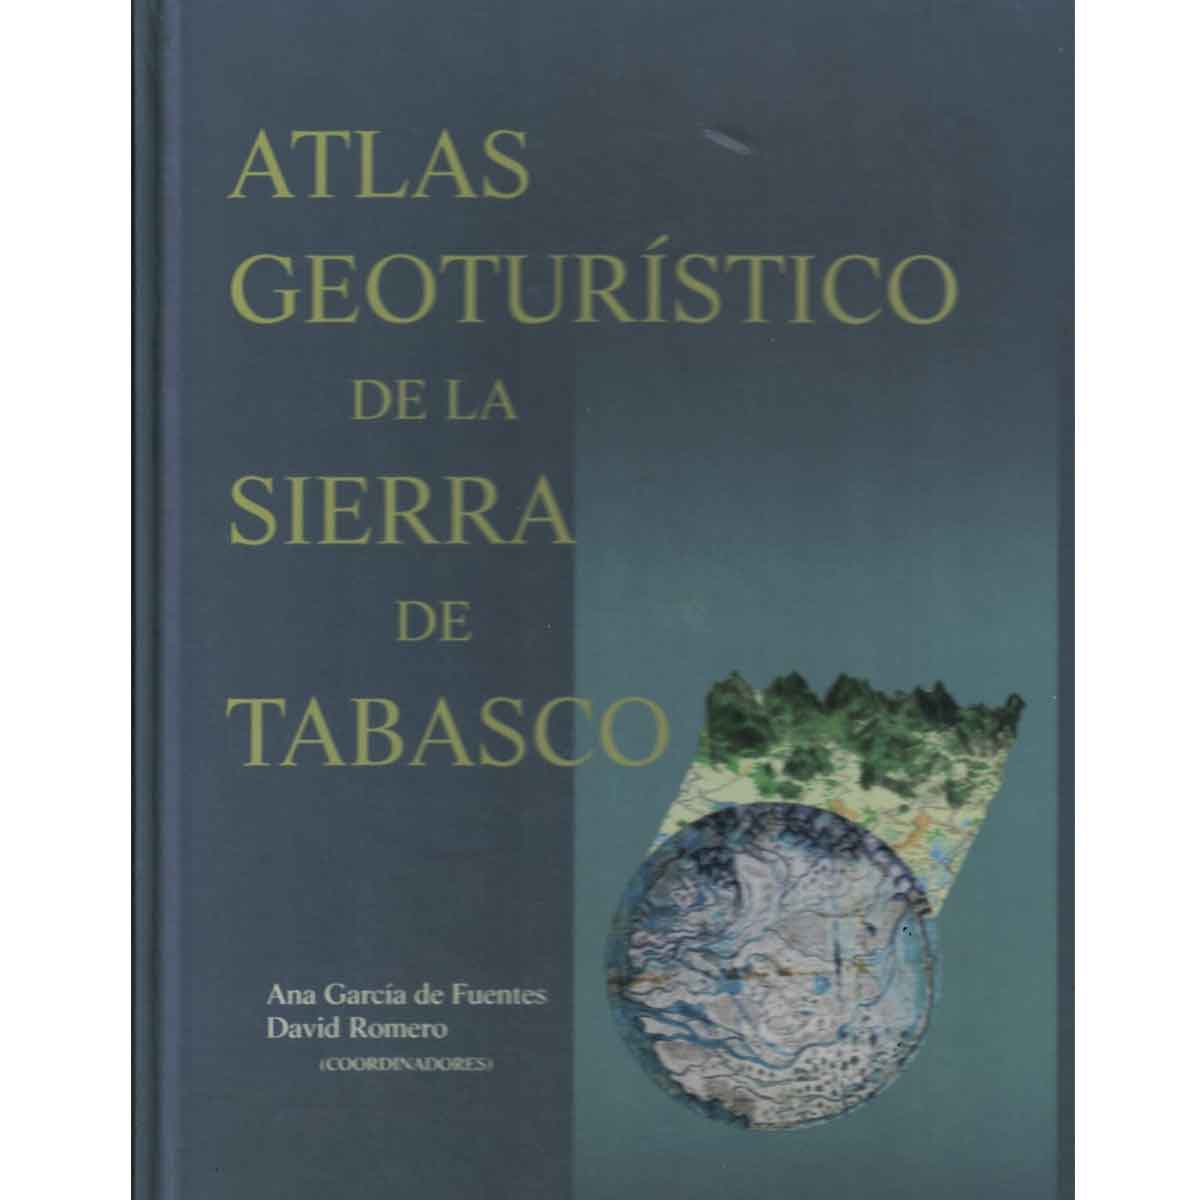 ATLAS GEOTURISTÍCO DE LA SIERRA DE TABASCO